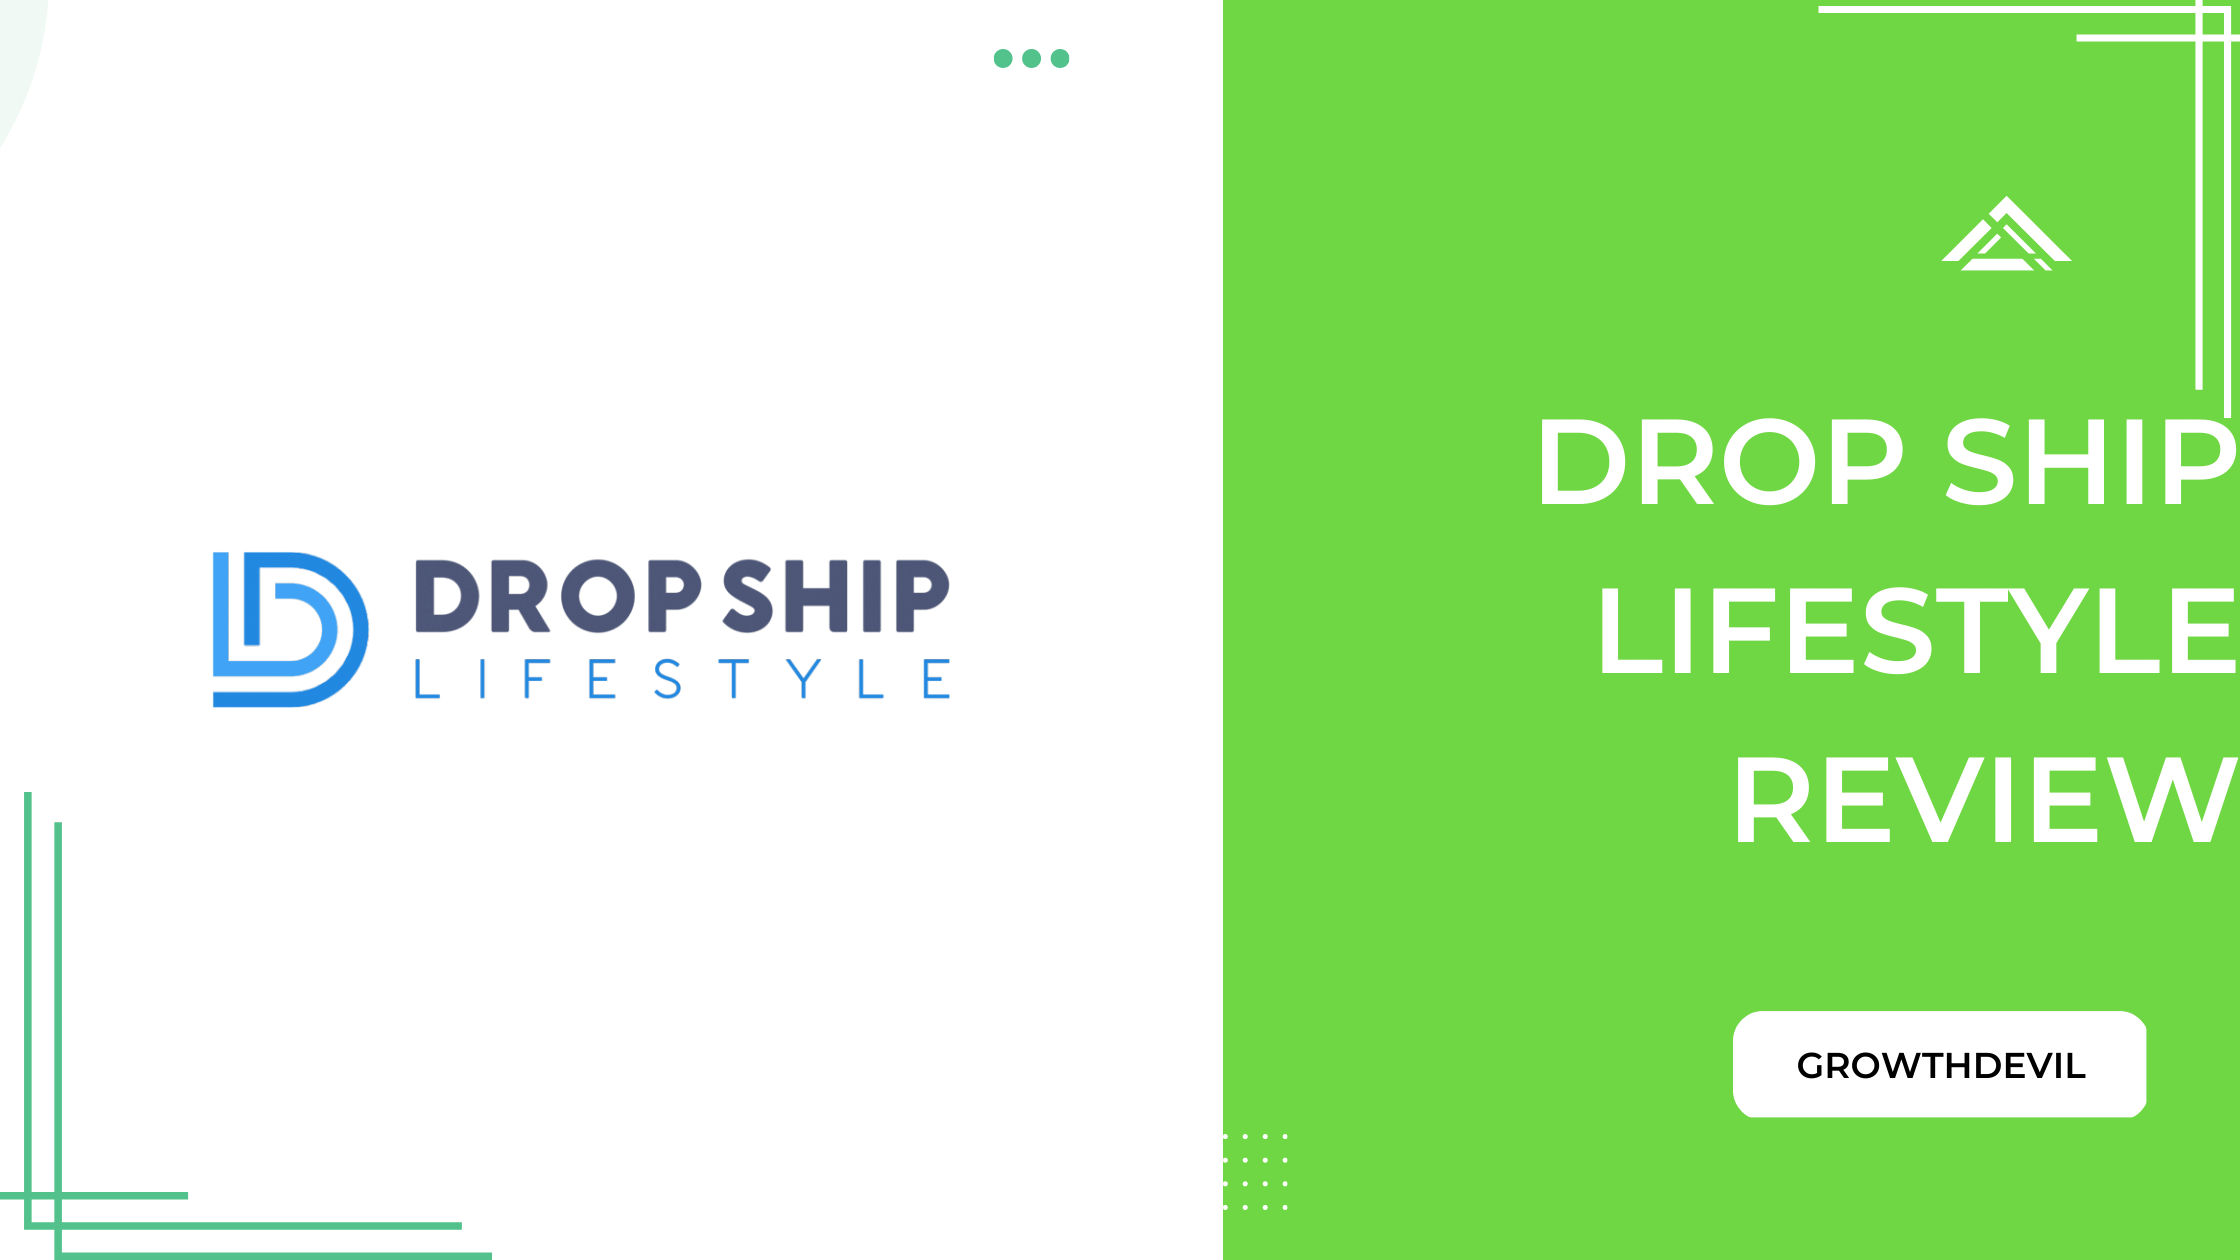 Drop Ship Lifestyle Review - DemandSage